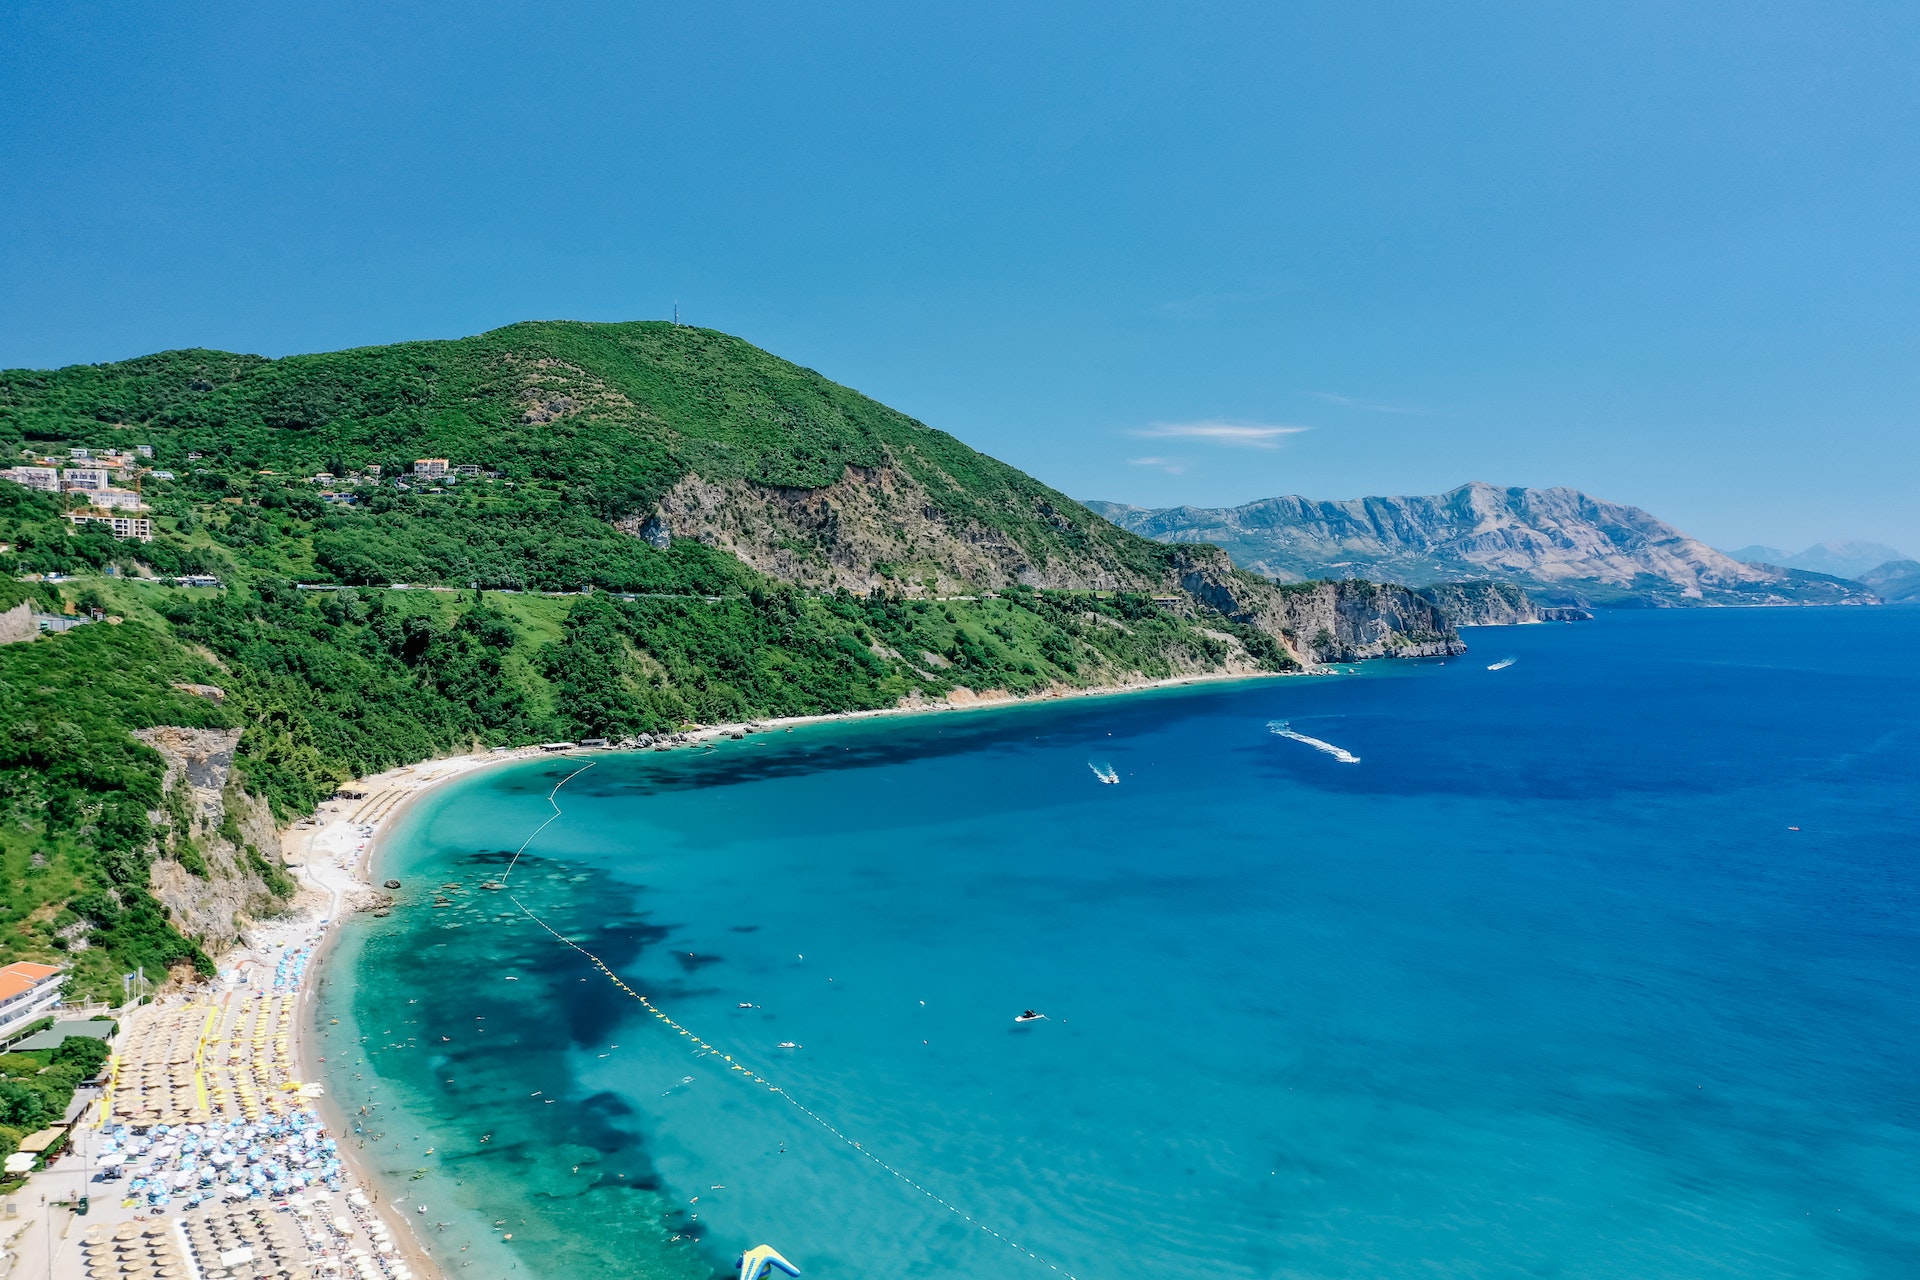 Wakacje w Czarnogórze: 5 miejscowości nad morzem które musisz odwiedzić!